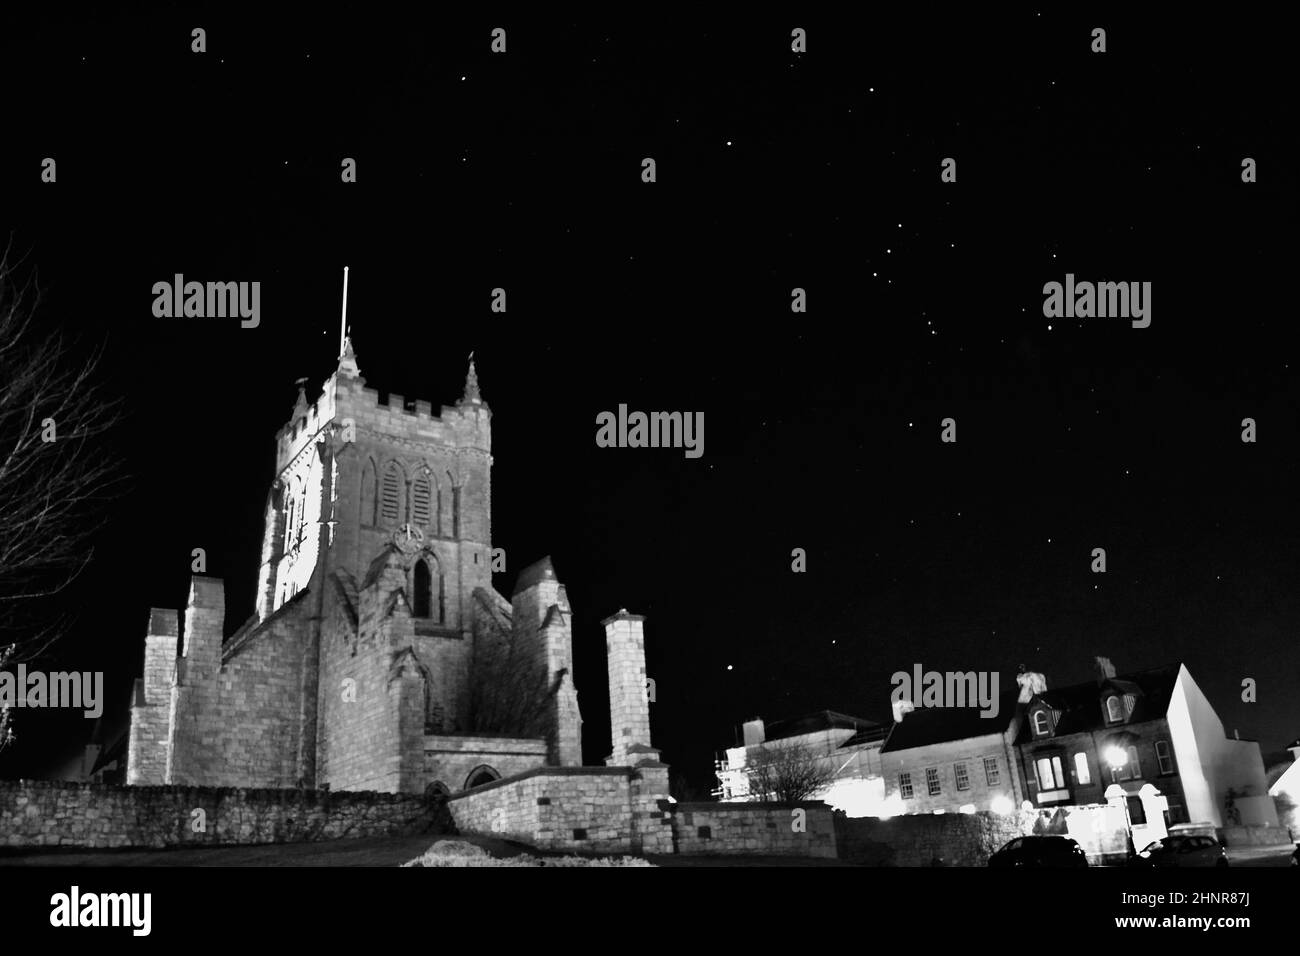 Immagine in bianco e nero della chiesa di St Hilda, Hartlepool, Regno Unito, con uno splendido cielo notturno. Le stelle brillano, compresa la costellazione di Orione. Foto Stock